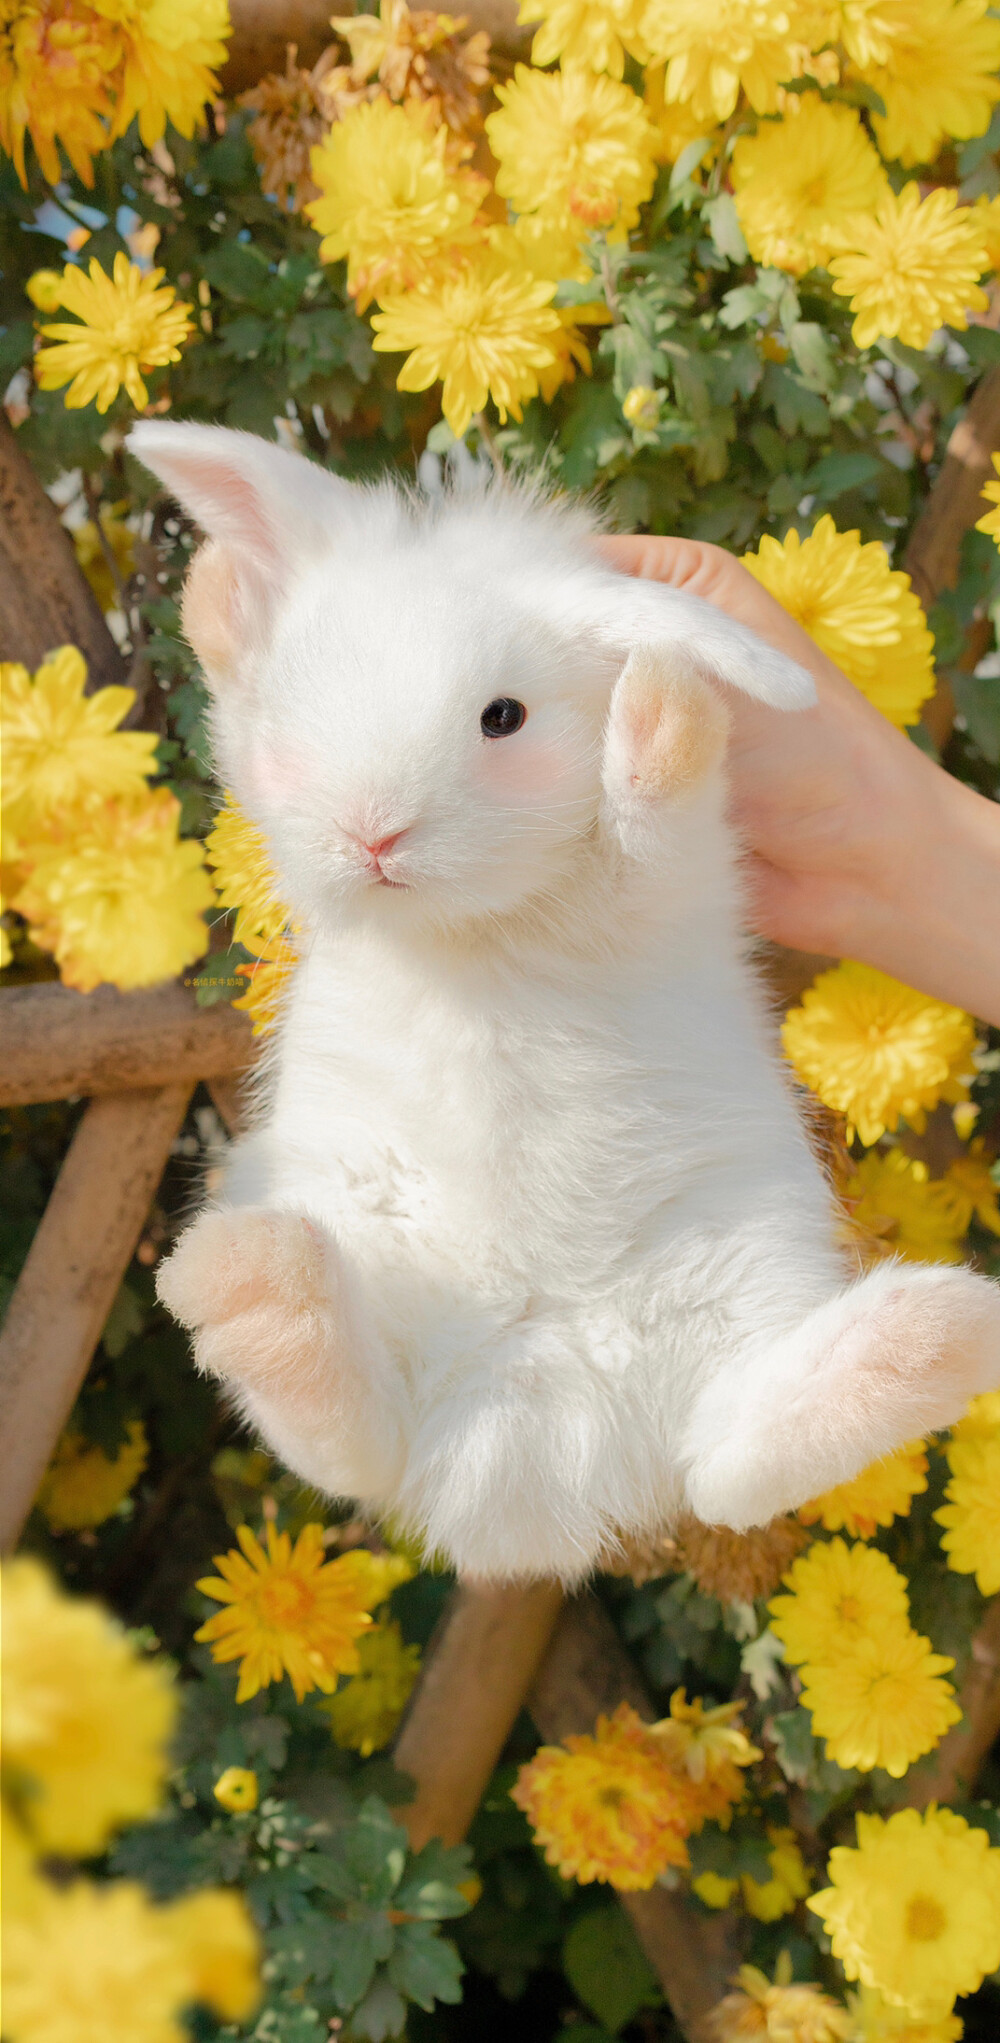 小兔叽可爱 - 堆糖,美图壁纸兴趣社区